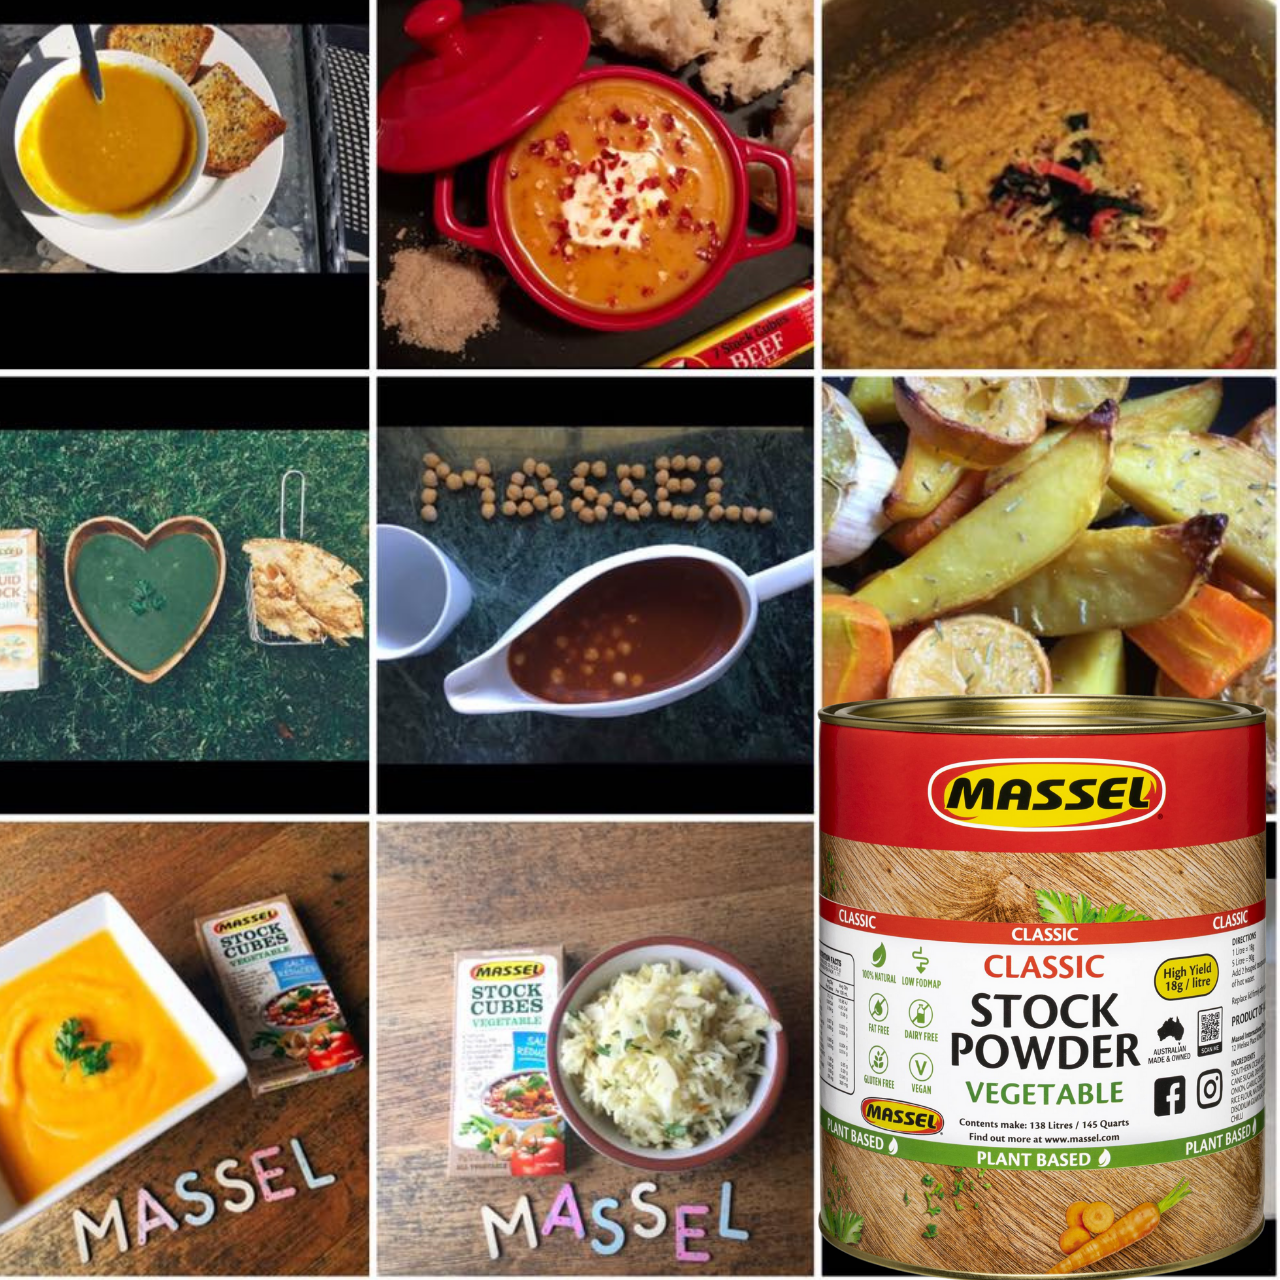 Hạt Nêm Massel Úc 100% Từ Rau Củ 2.5kg - Nấu Được Món Chay, Món Mặn, Ăn Dặm Cho Bé Và Mọi Lứa Tuổi Trong Gia Đình - Massel Official